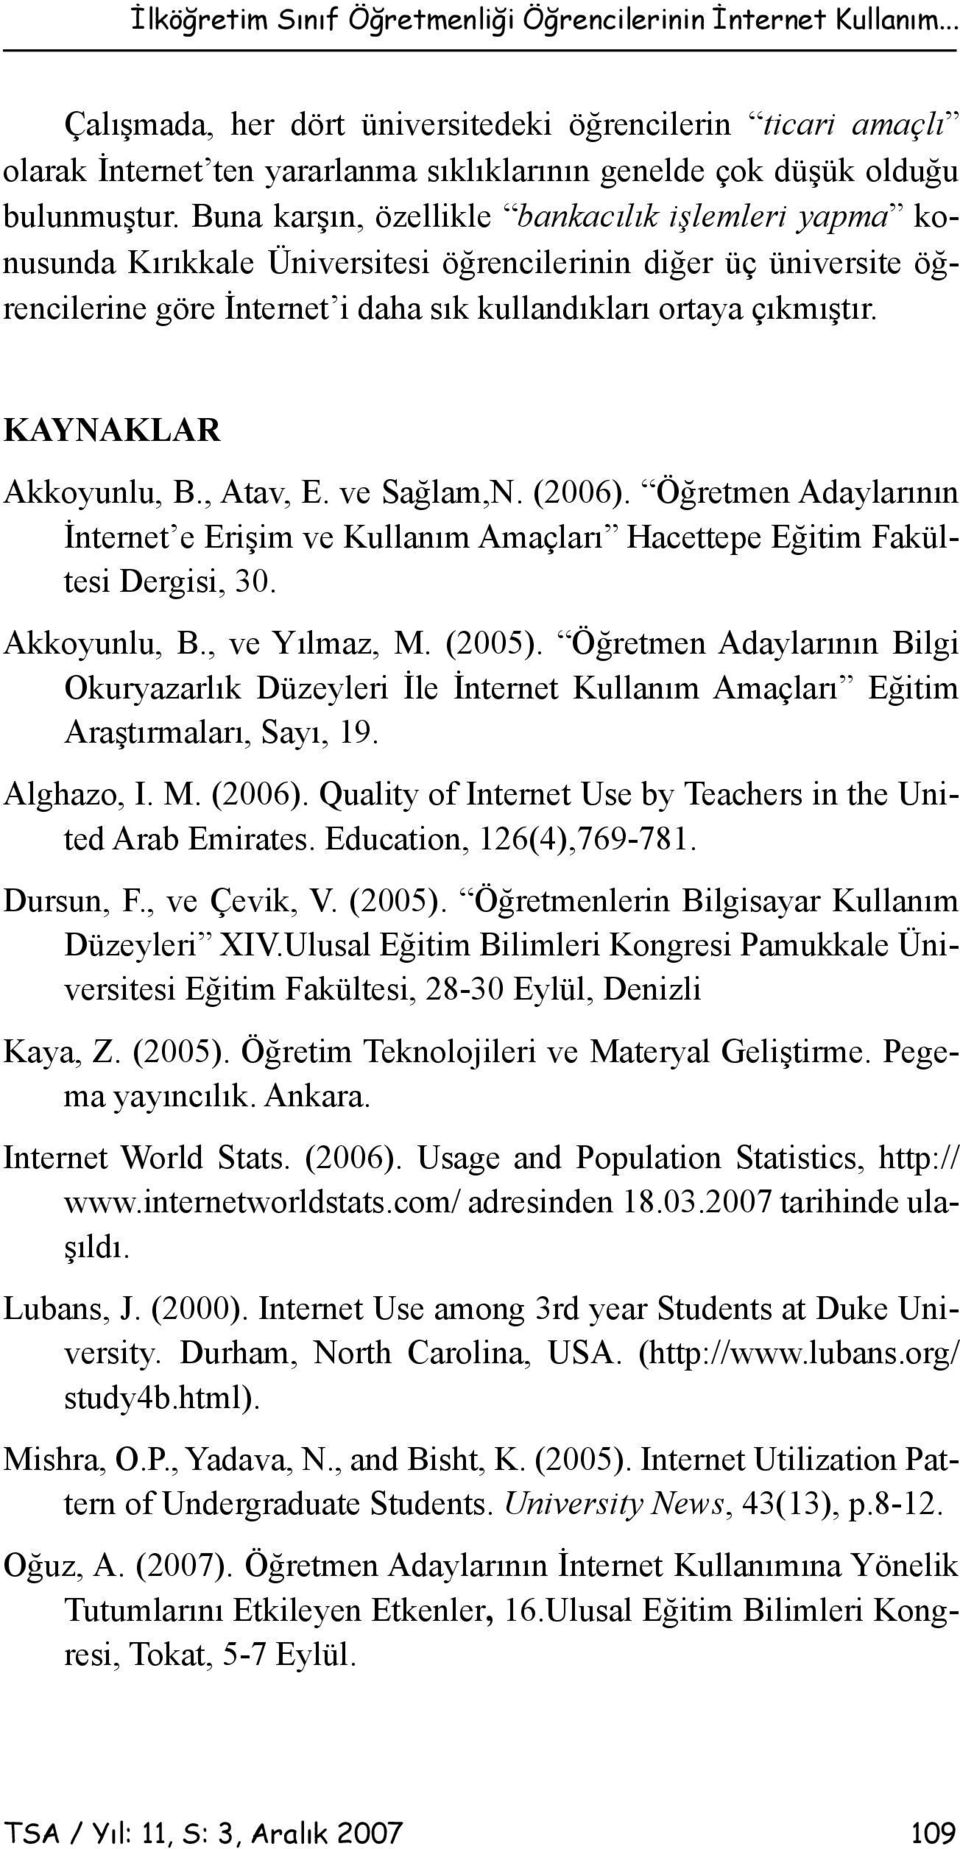 Buna karşın, özellikle bankacılık işlemleri yapma konusunda Kırıkkale Üniversitesi öğrencilerinin diğer üç üniversite öğrencilerine göre İnternet i daha sık kullandıkları ortaya çıkmıştır.